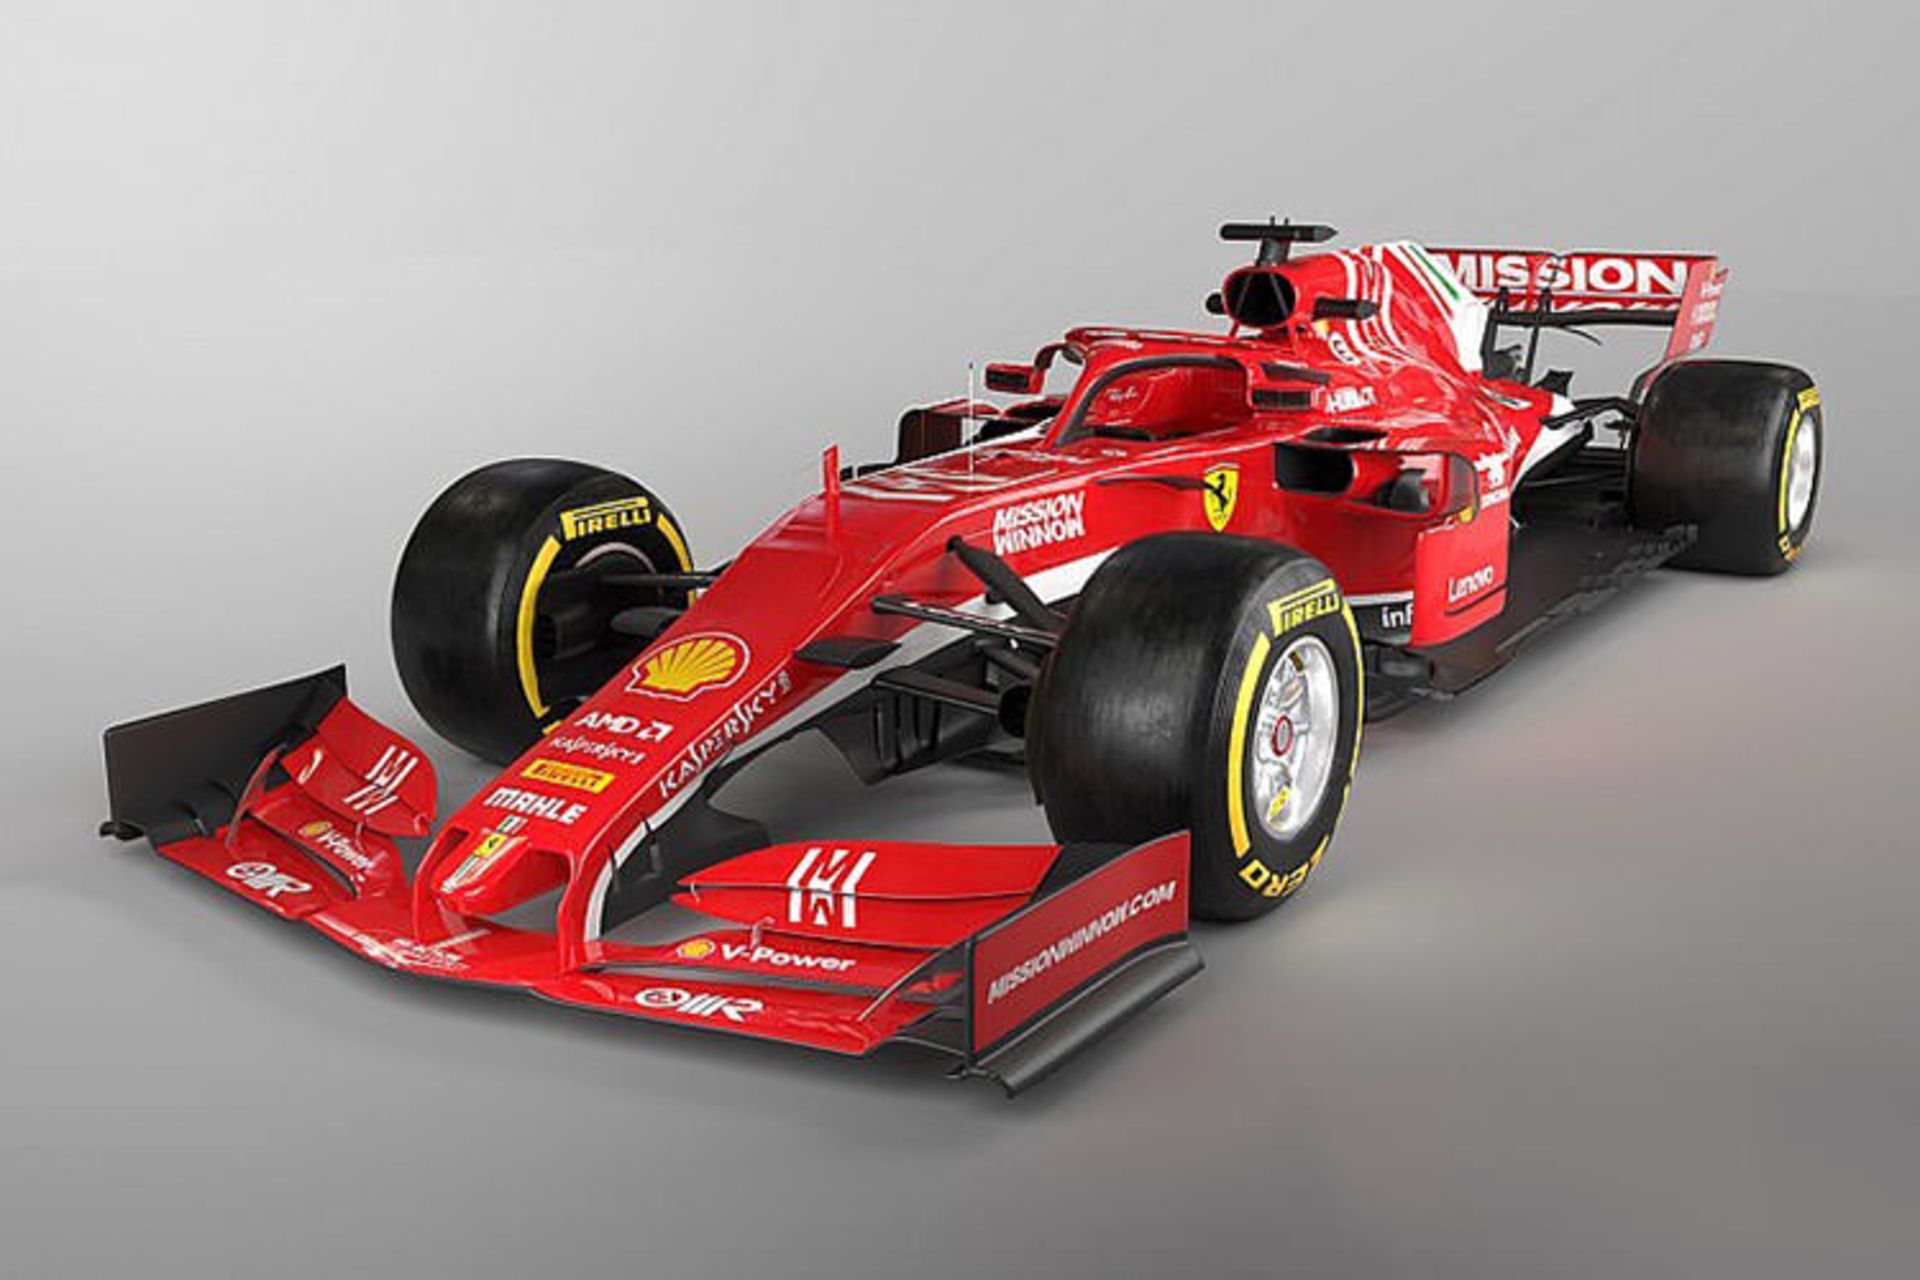 مرجع متخصصين ايران Ferrari 2019 Formula 1 car / خودرو فرمول يك فراري